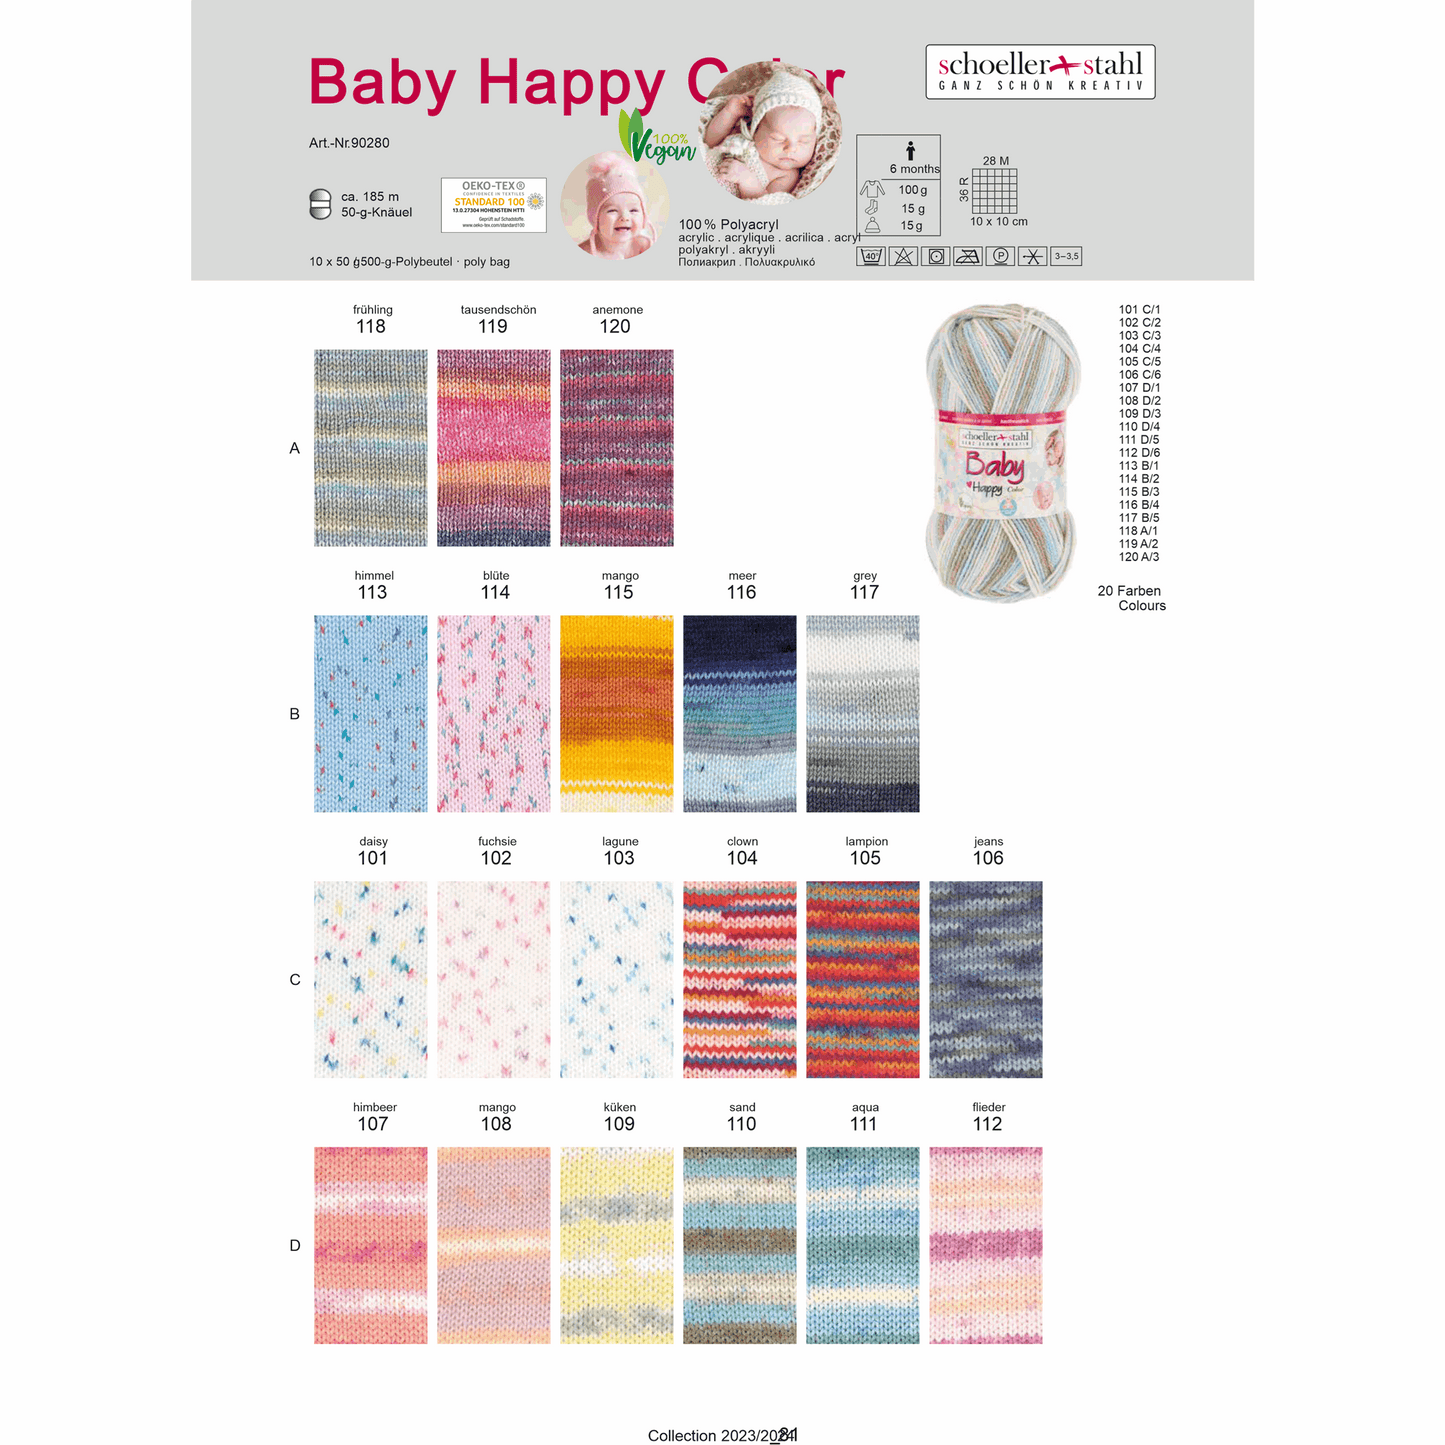 Baby happy color 50g, 90280, Farbe 117, grey